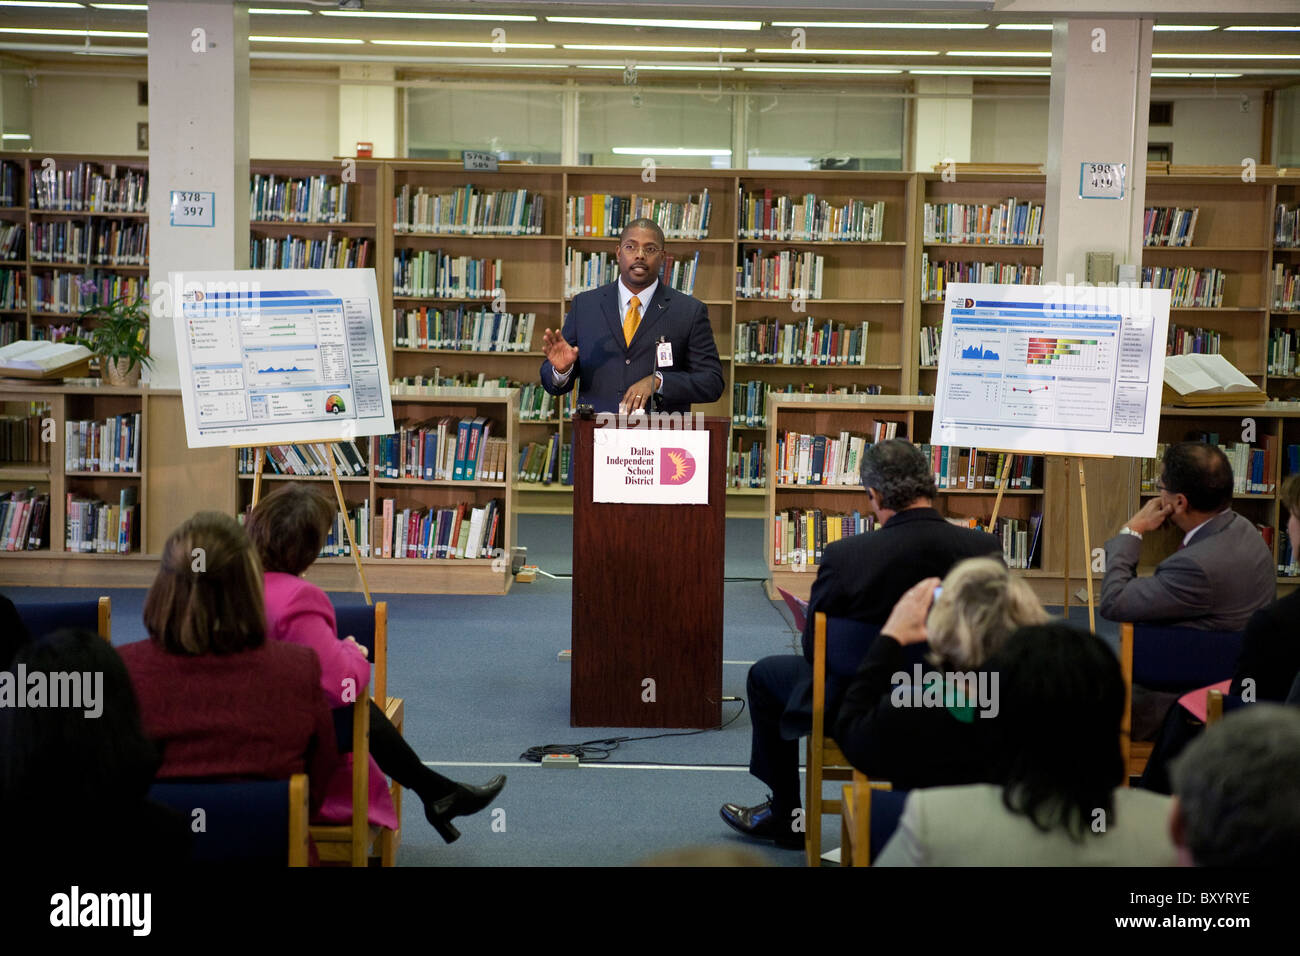 Macho americano africano ejecutivo de la organización sin ánimo de lucro hace presentación durante una conferencia de prensa en la biblioteca de la escuela pública Foto de stock